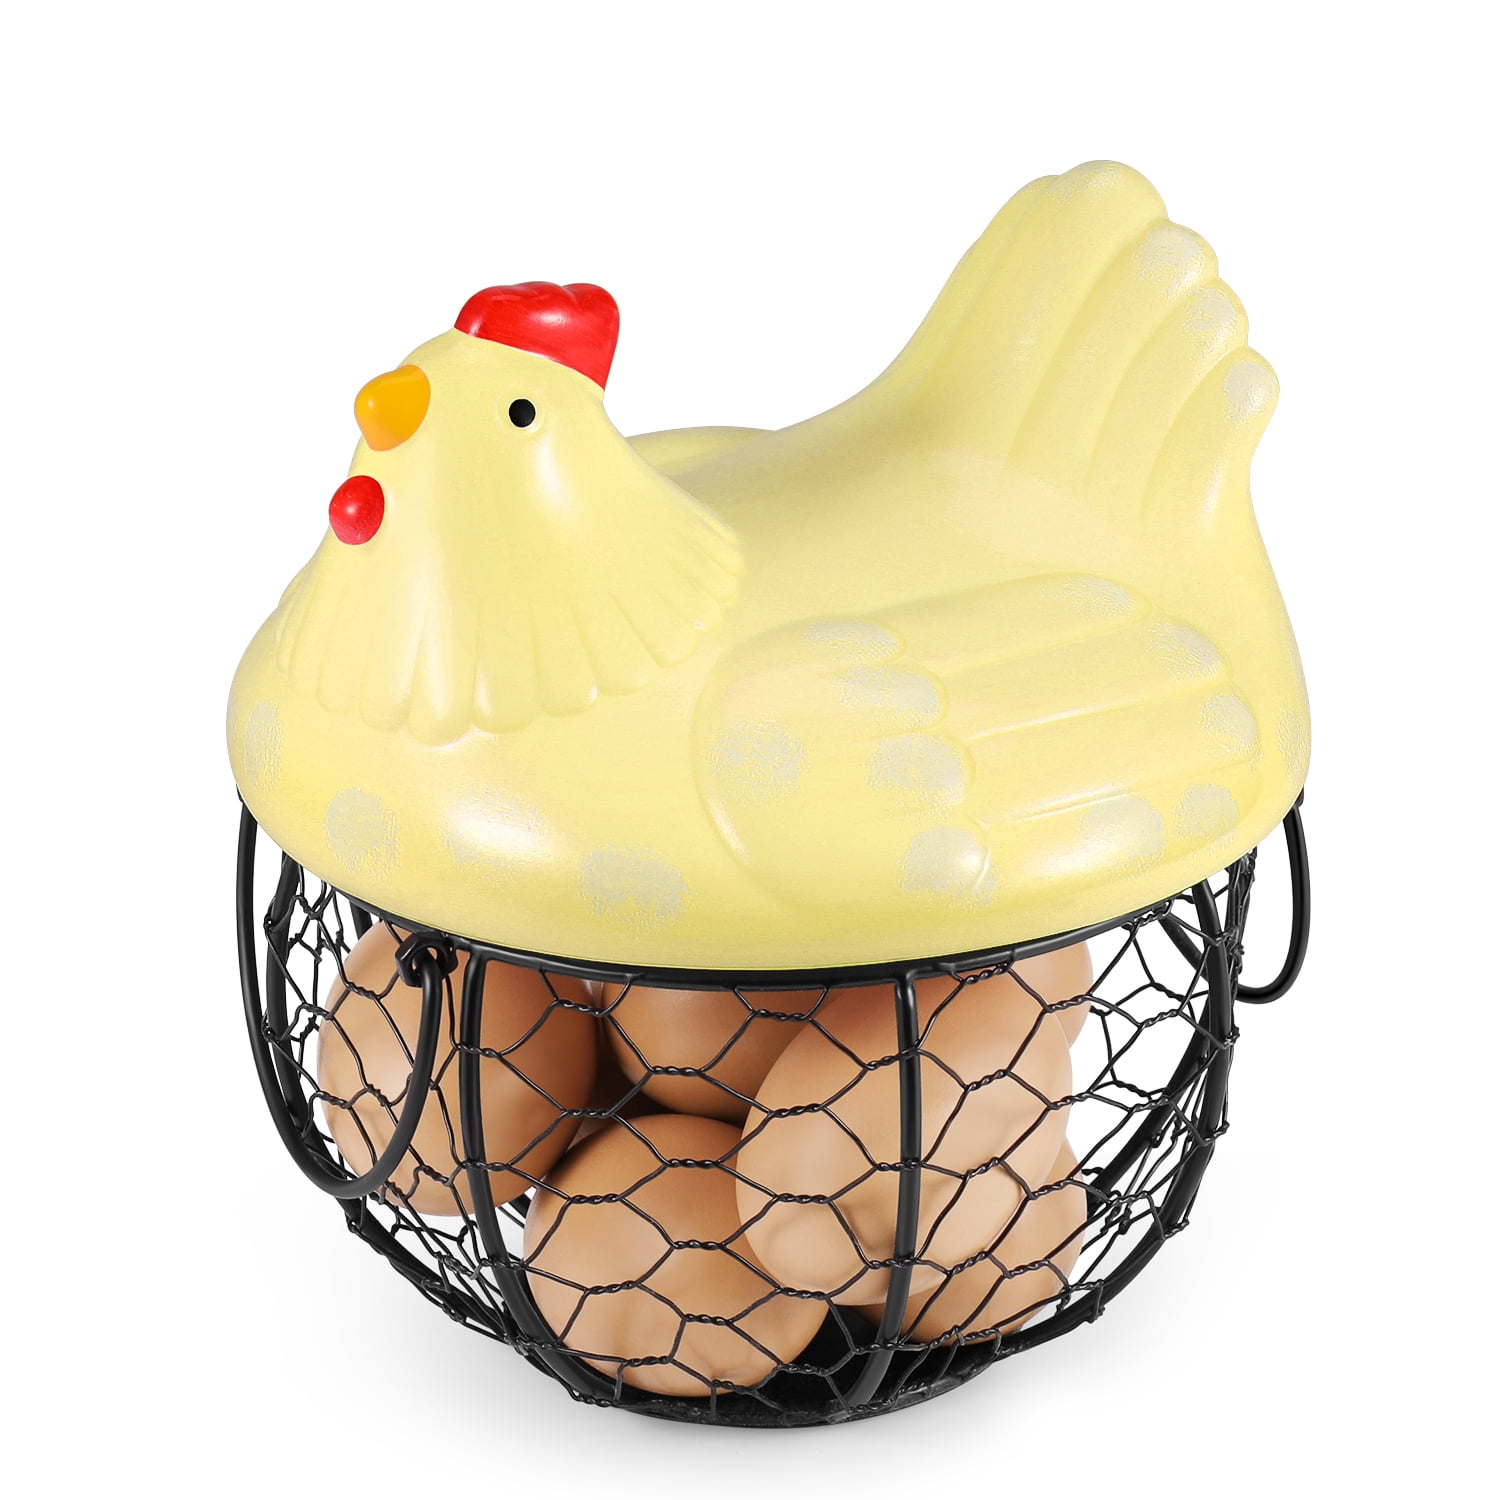 oskas Kitchen Storage Metal Wire Egg Basket with Ceramic Farm Chicken Cover Fresh Egg Holder/Organizer Case/Container